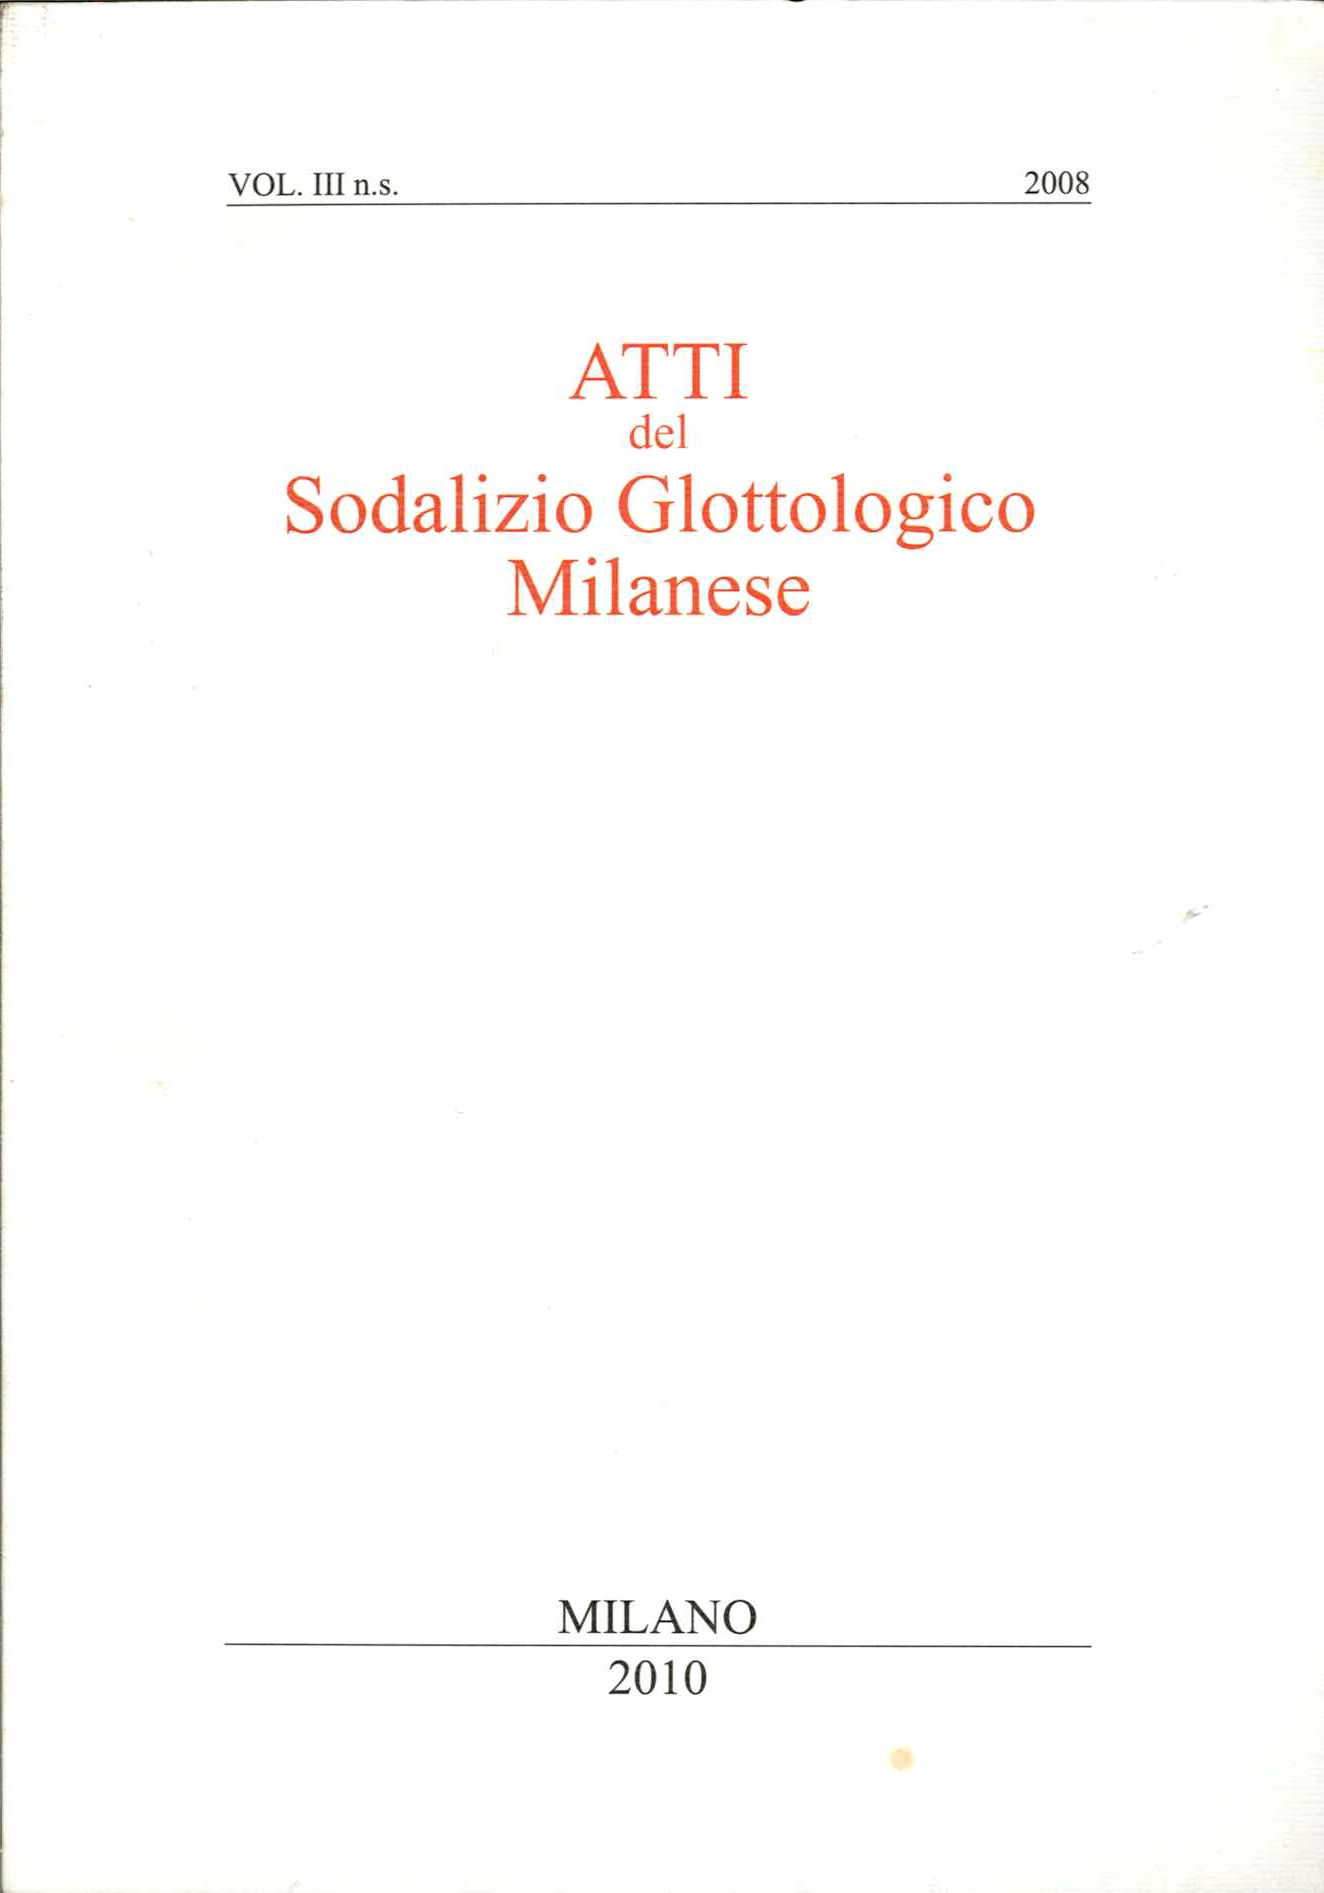 Atti del sodalizio glottologico milanese 2010